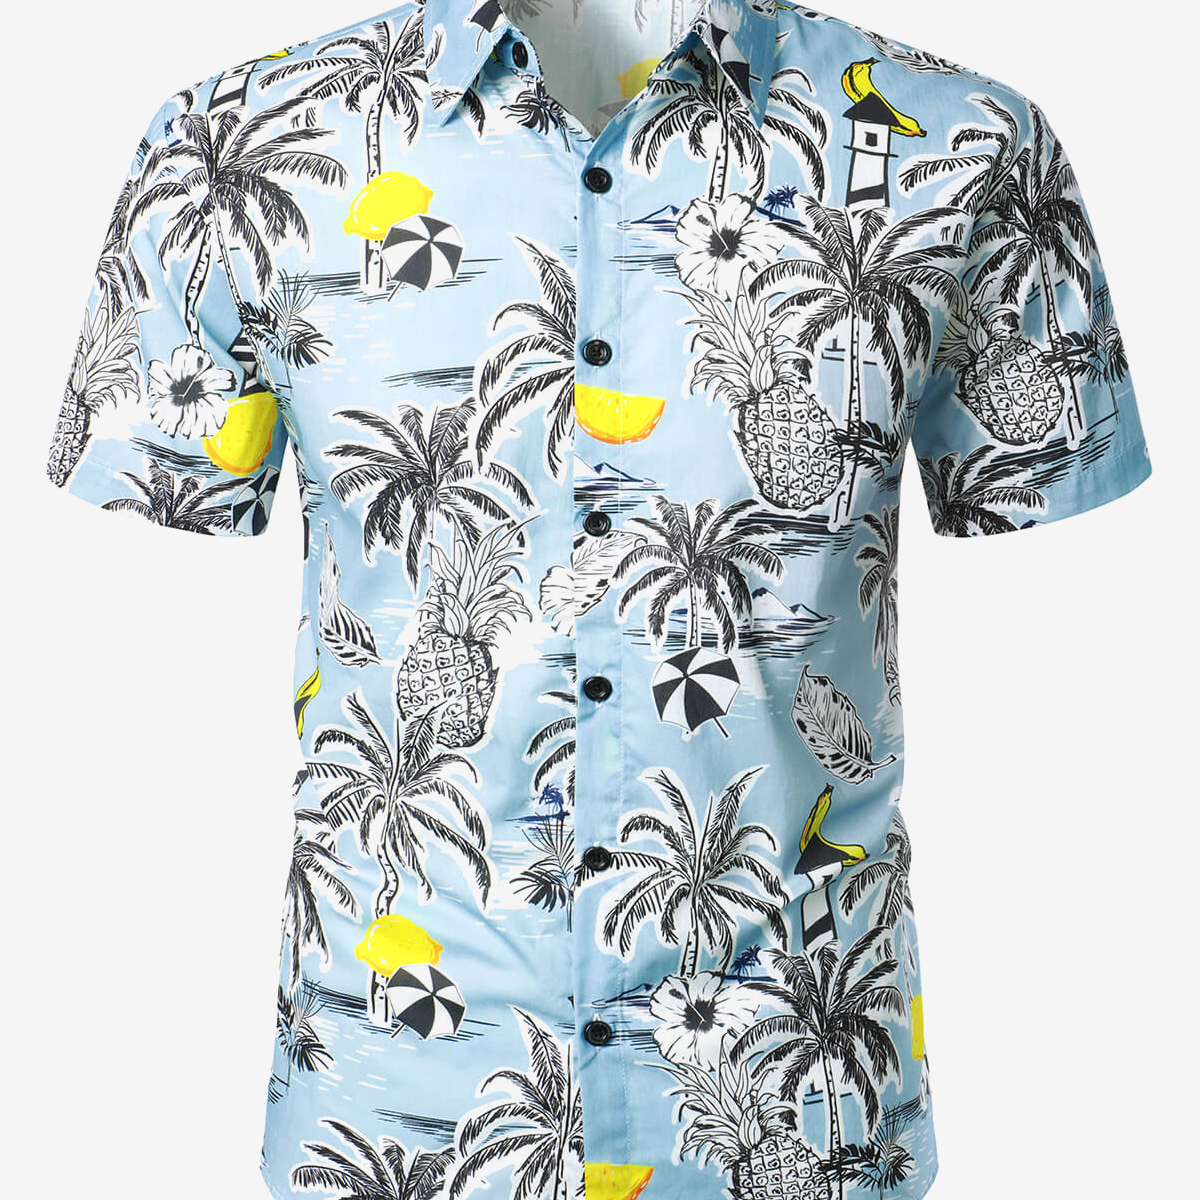 Men's Pineapple Cotton Fruit Tropical Button Up Beach Island Short Sleeve Light Blue Hawaiian Shirt